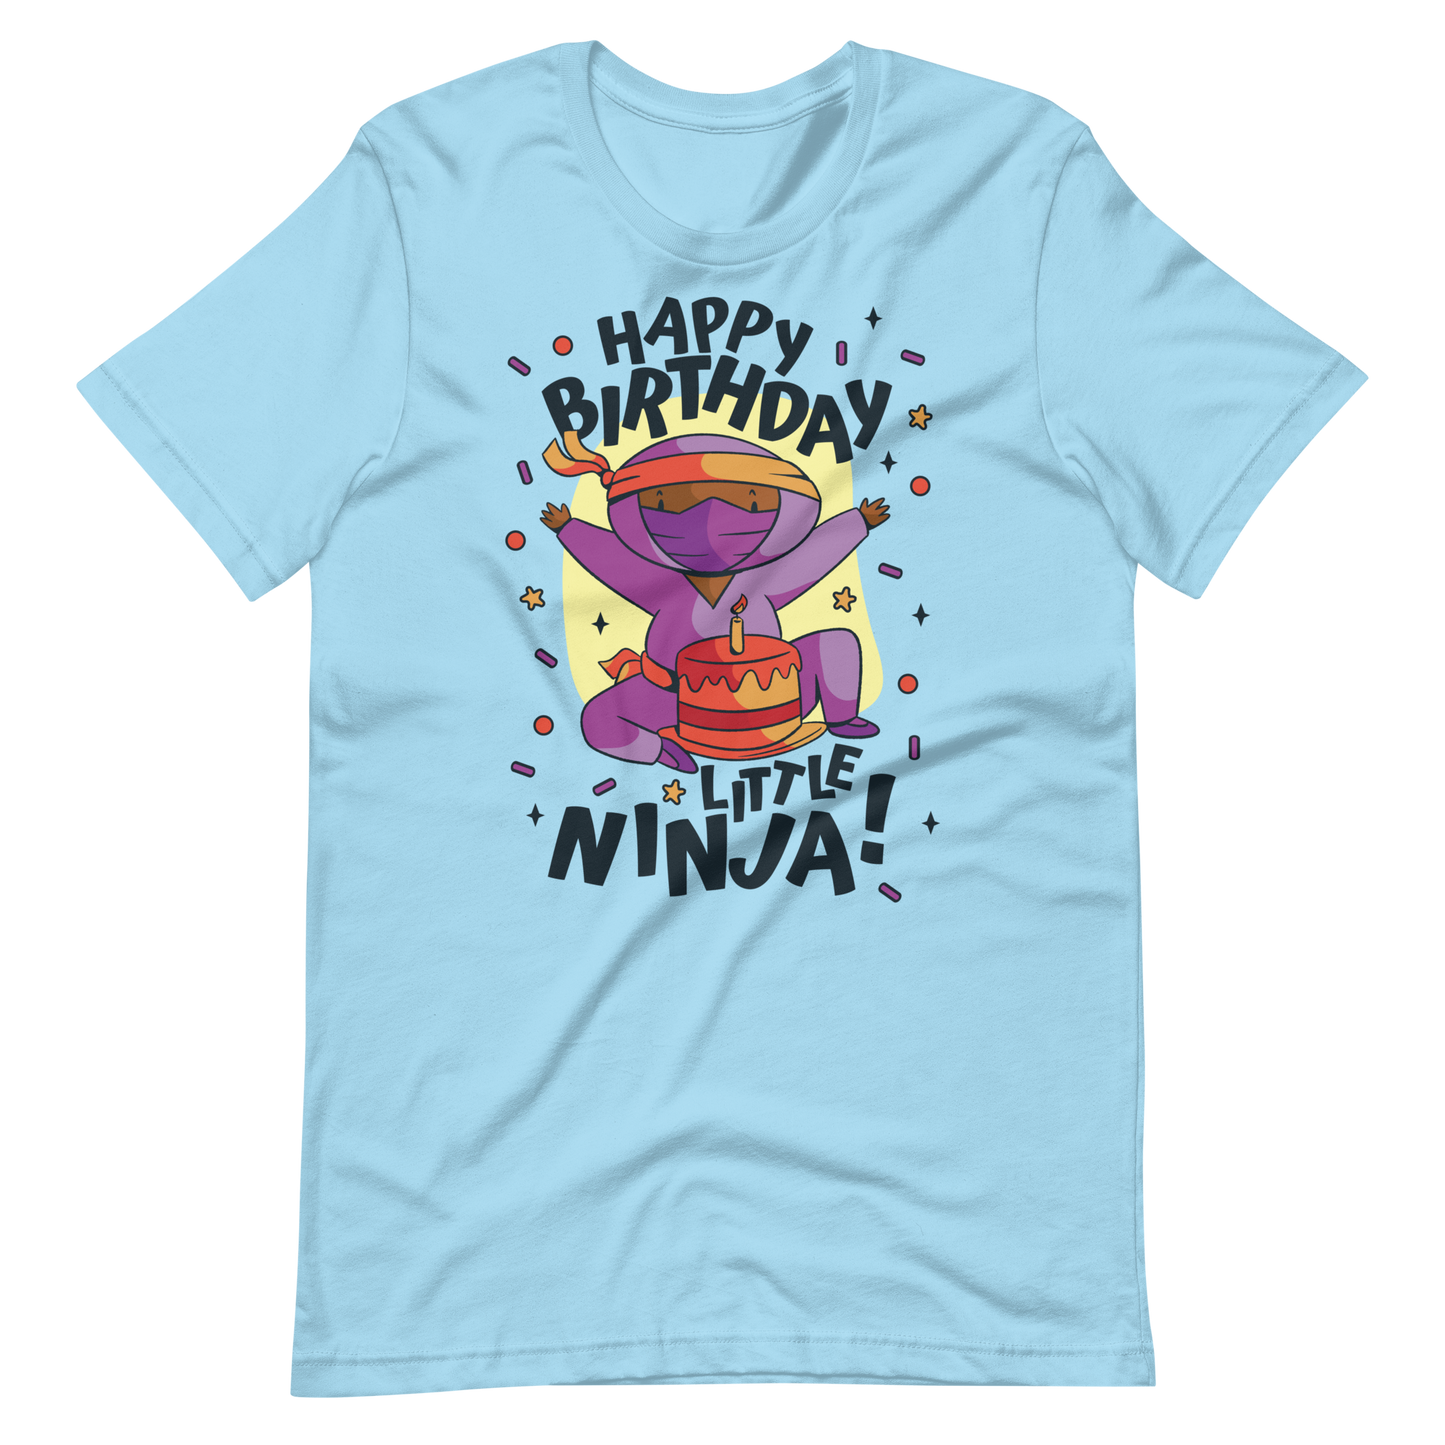 Birthday ninja kid | Unisex t-shirt